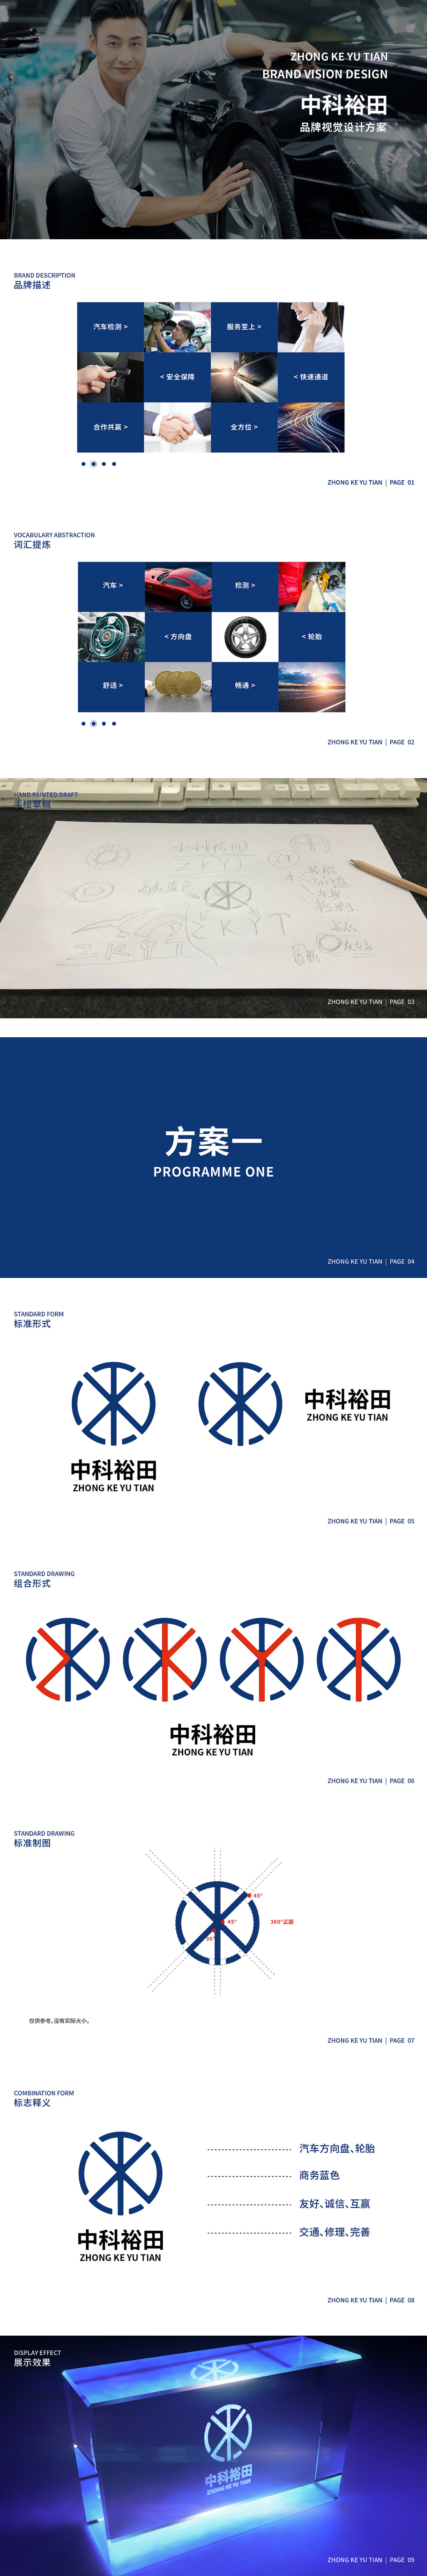 天得利项目案例 | 中科裕田品牌logo设计